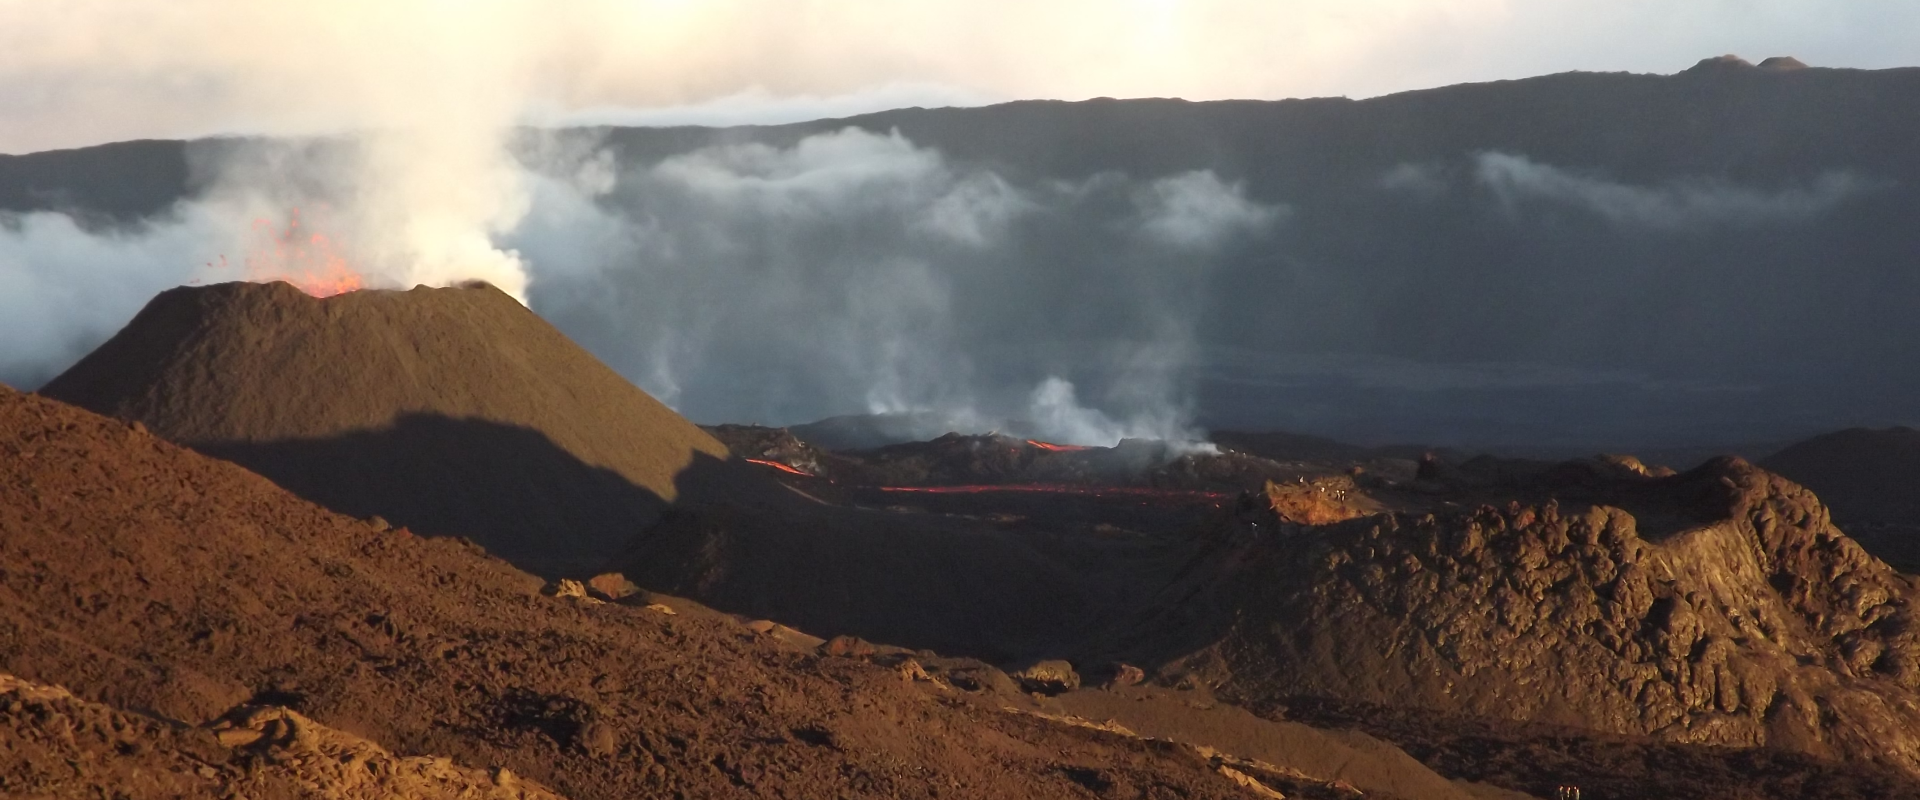 Eruption volcanique (La Réunion, septembre 2015).